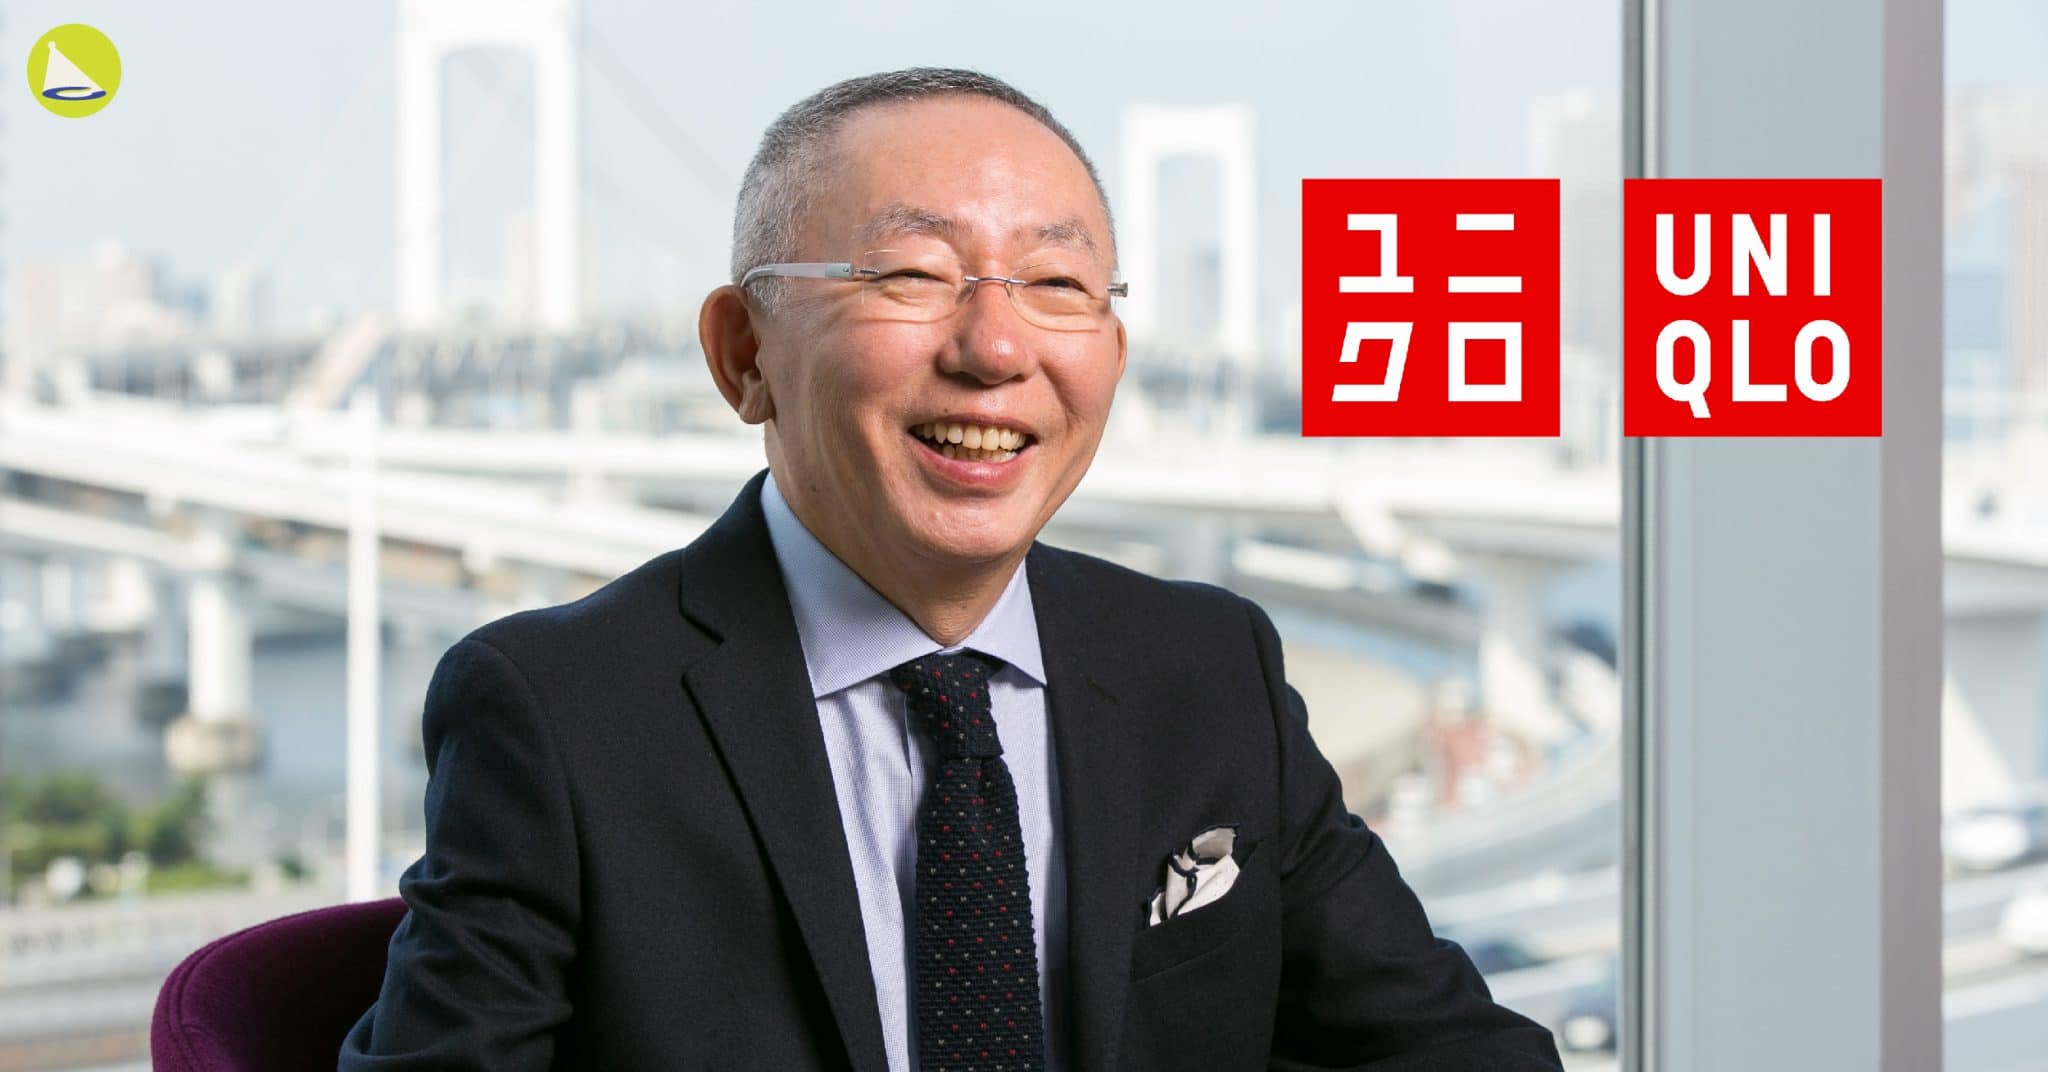 Tadashi Yanai: ผู้สร้าง Uniqlo ให้กลายเป็นแบรนด์ระดับโลก